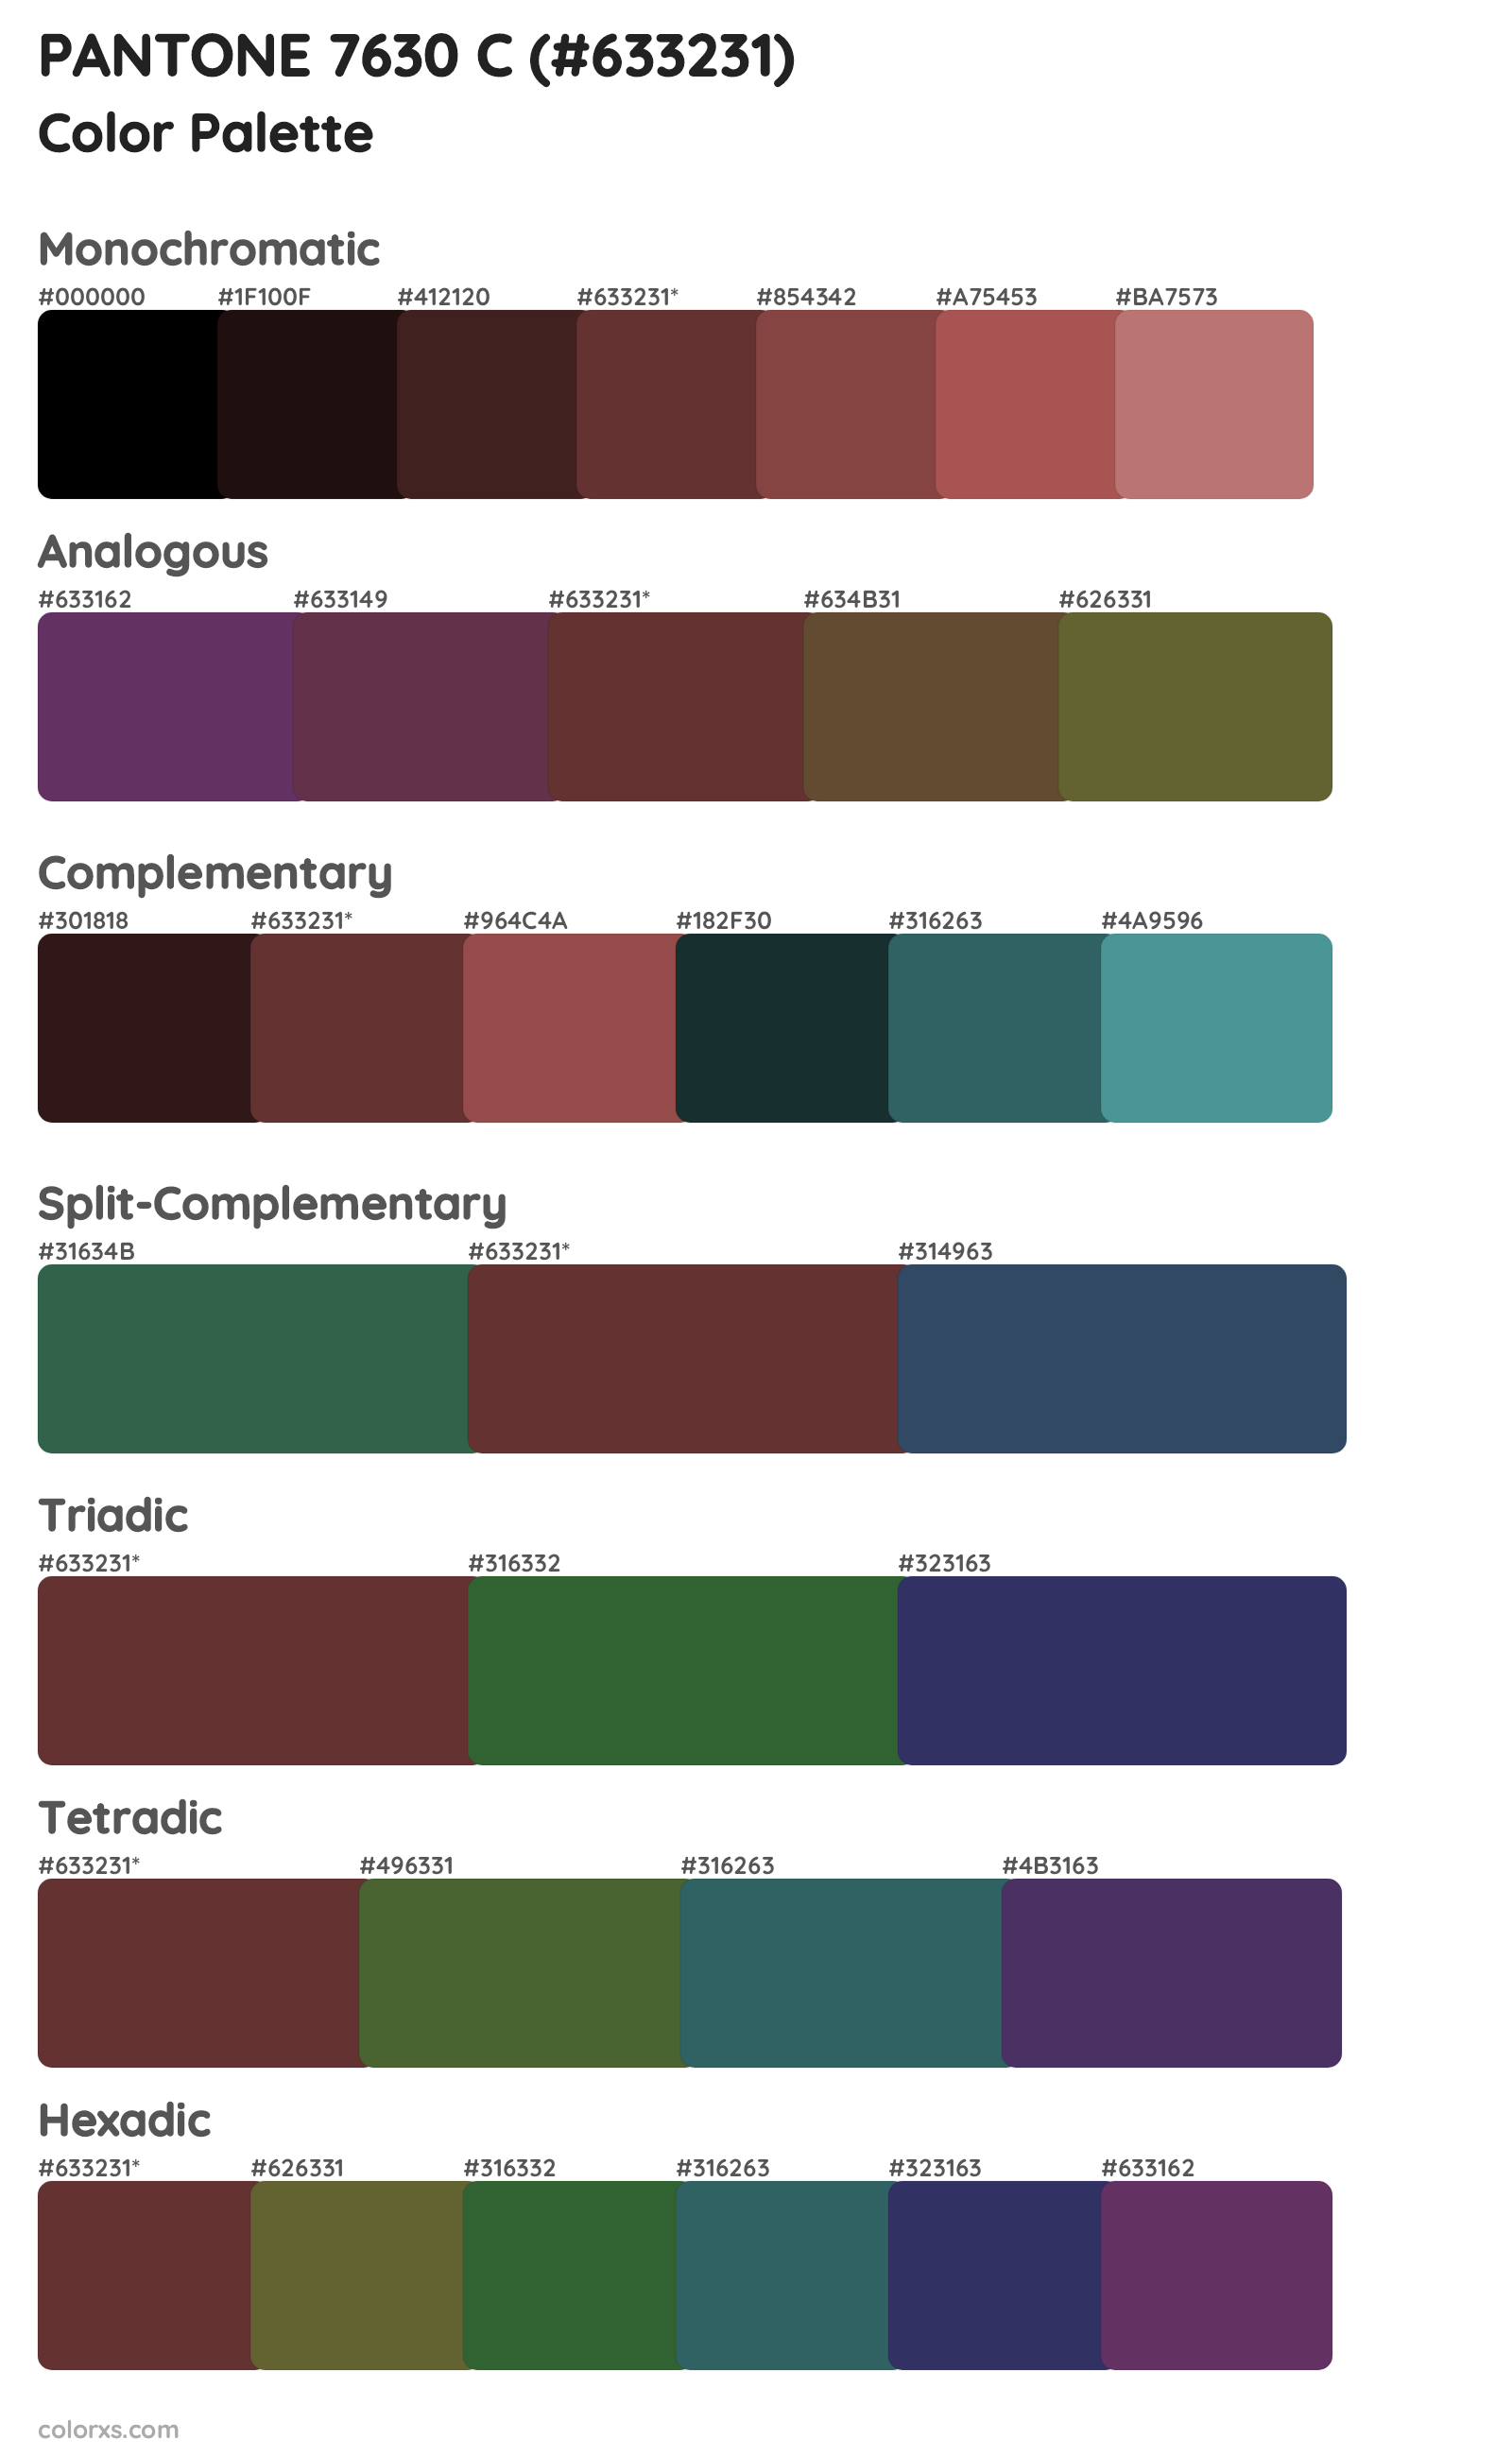 PANTONE 7630 C Color Scheme Palettes